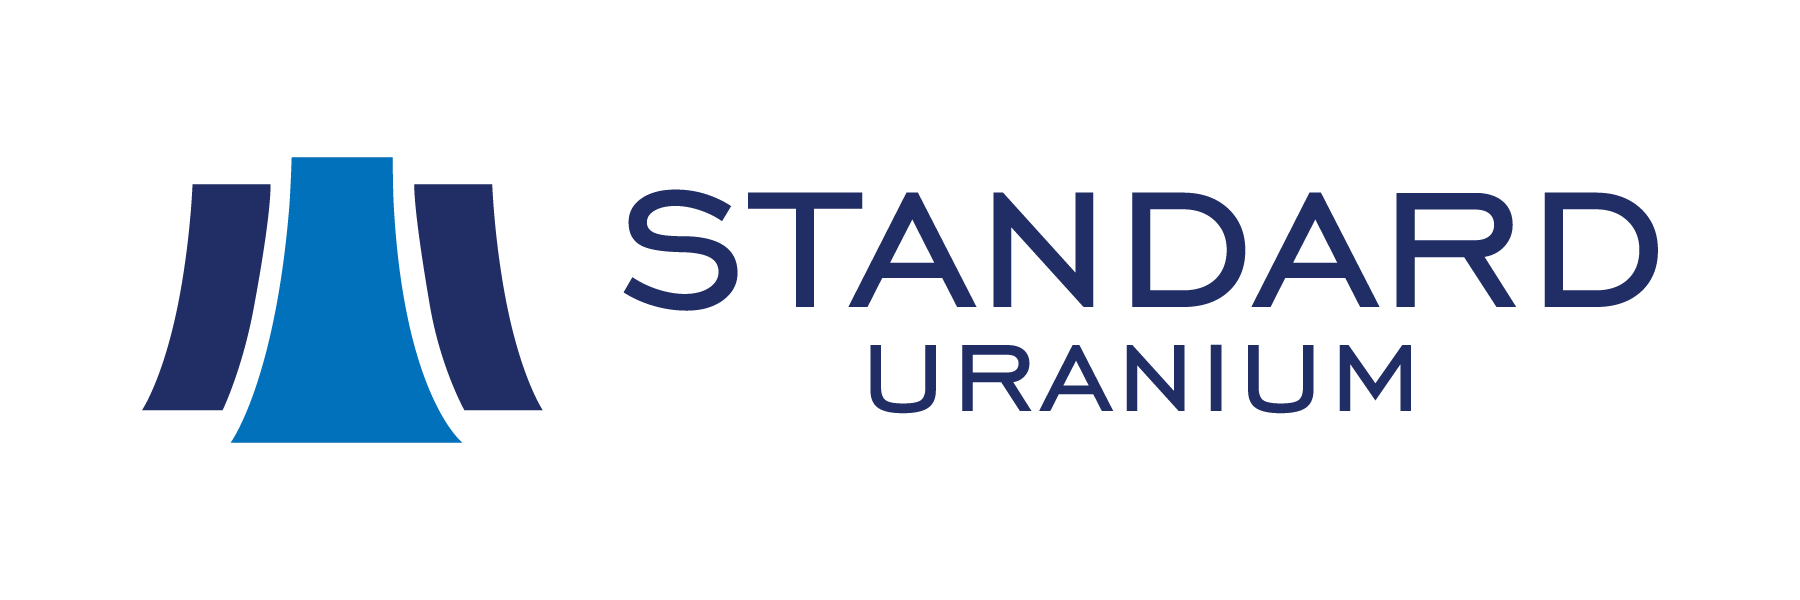 Standard Uranium Ltd. Announces Closing of C$5.0 Million Brokered Private Placement